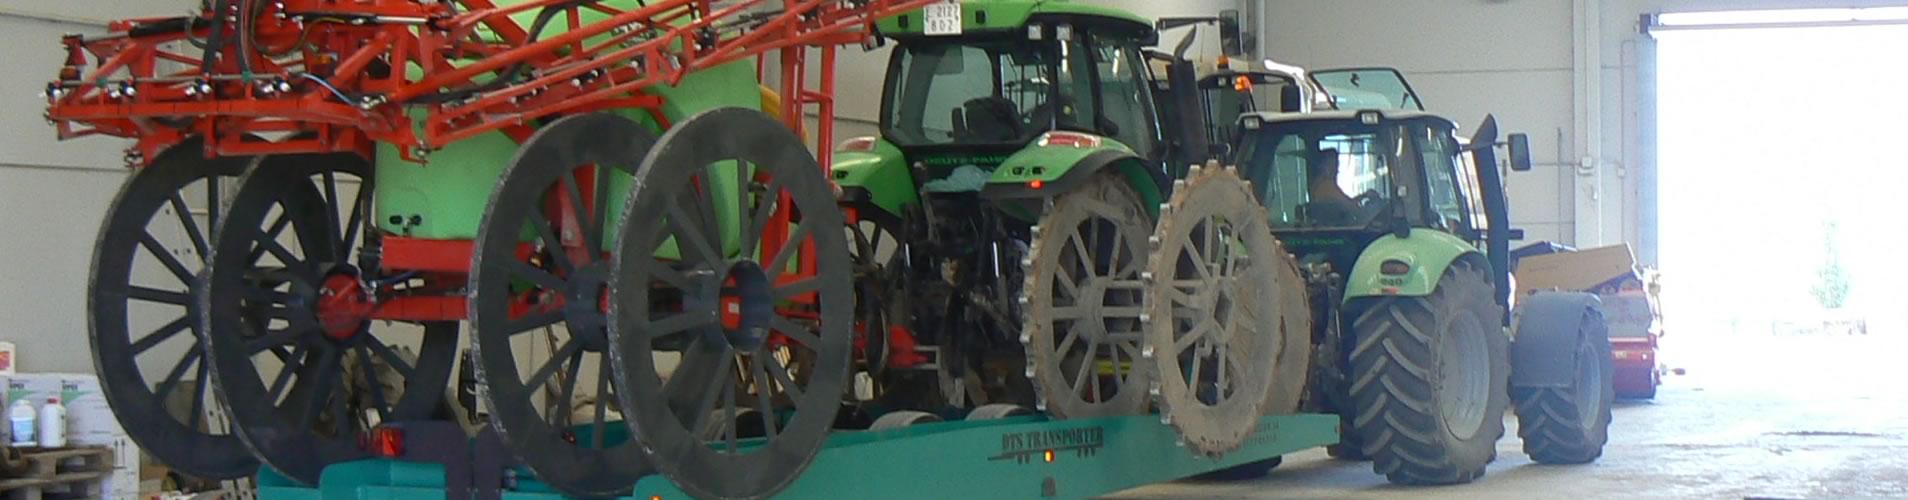 Tractores y maquinaria agrícola en Tarragona